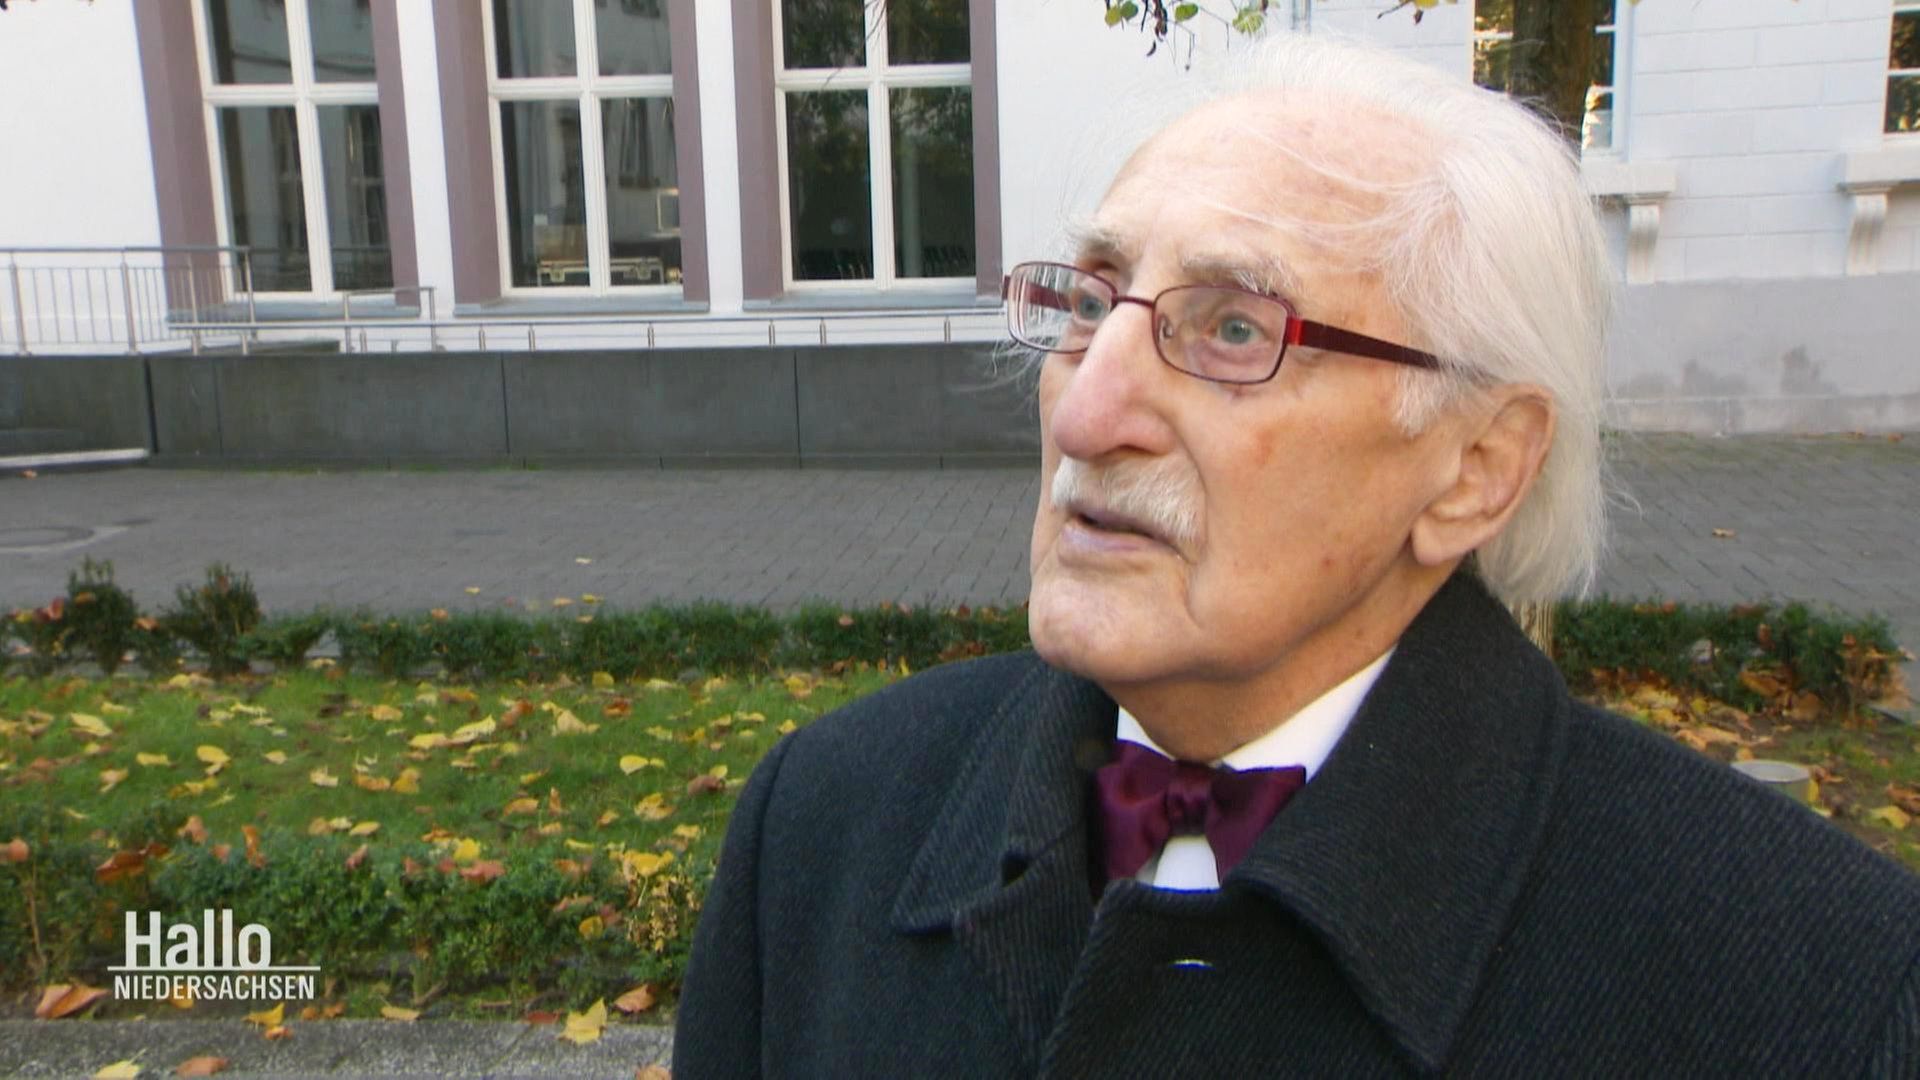 Hallo Niedersachsen: Holocaust-Überlebender besucht seine Studienstadt Göttingen | ARD Mediathek